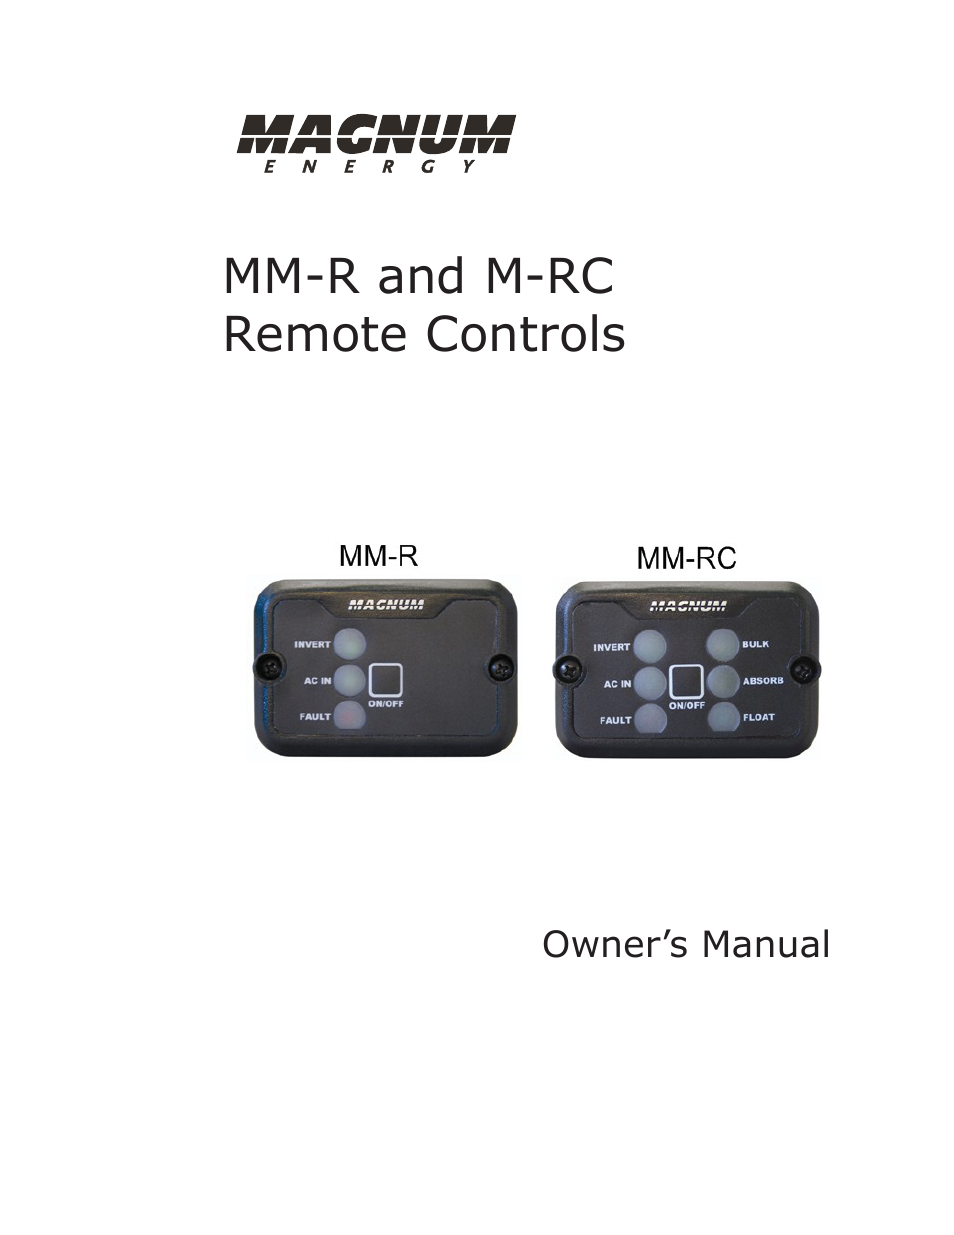 MM-R Remote